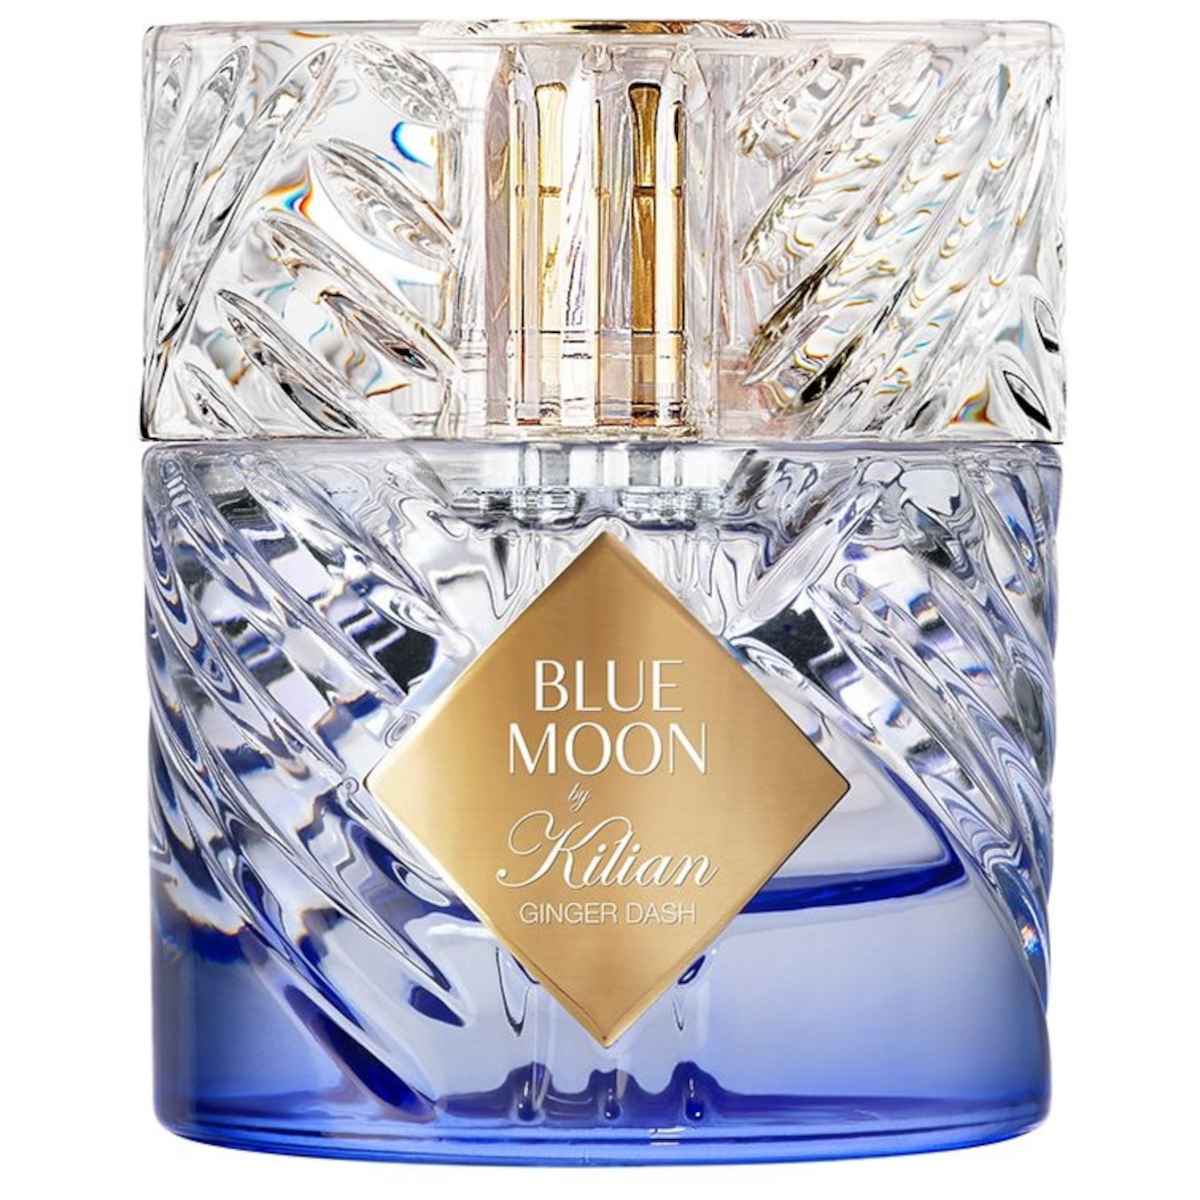 Kilian Blue Moon Ginger Dash eau de parfum